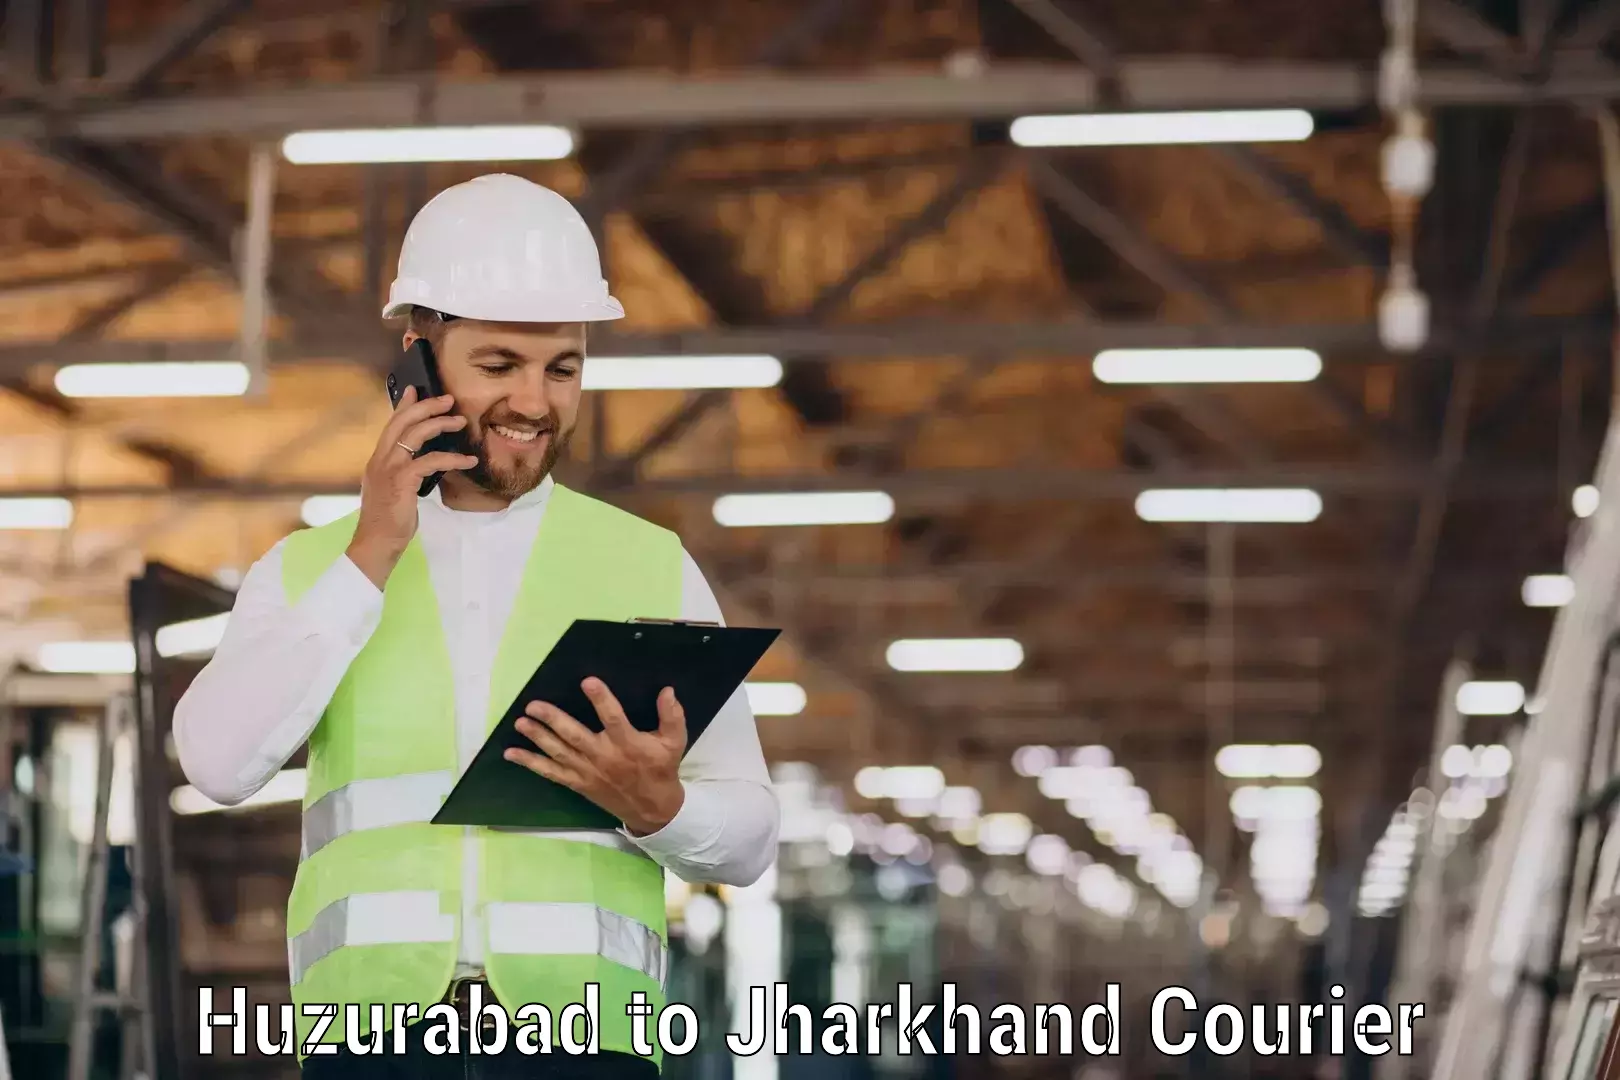 High-capacity parcel service Huzurabad to Boarijore